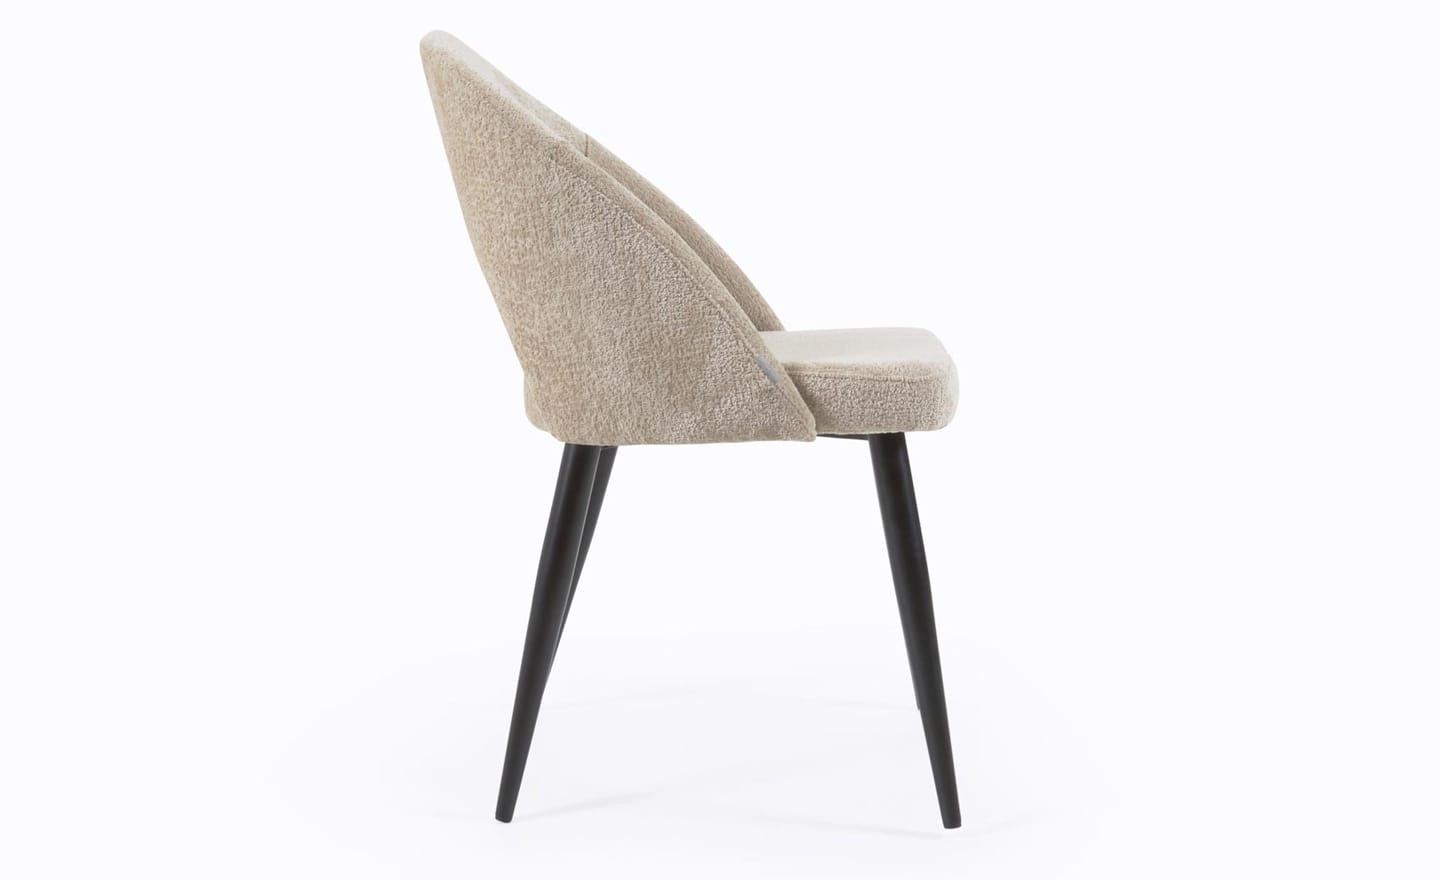 Cadeira Mael Chenille Bege, estofada com tecido chenille aveludado na cor bege. Pernas de metal preto para um design moderno e elegante.